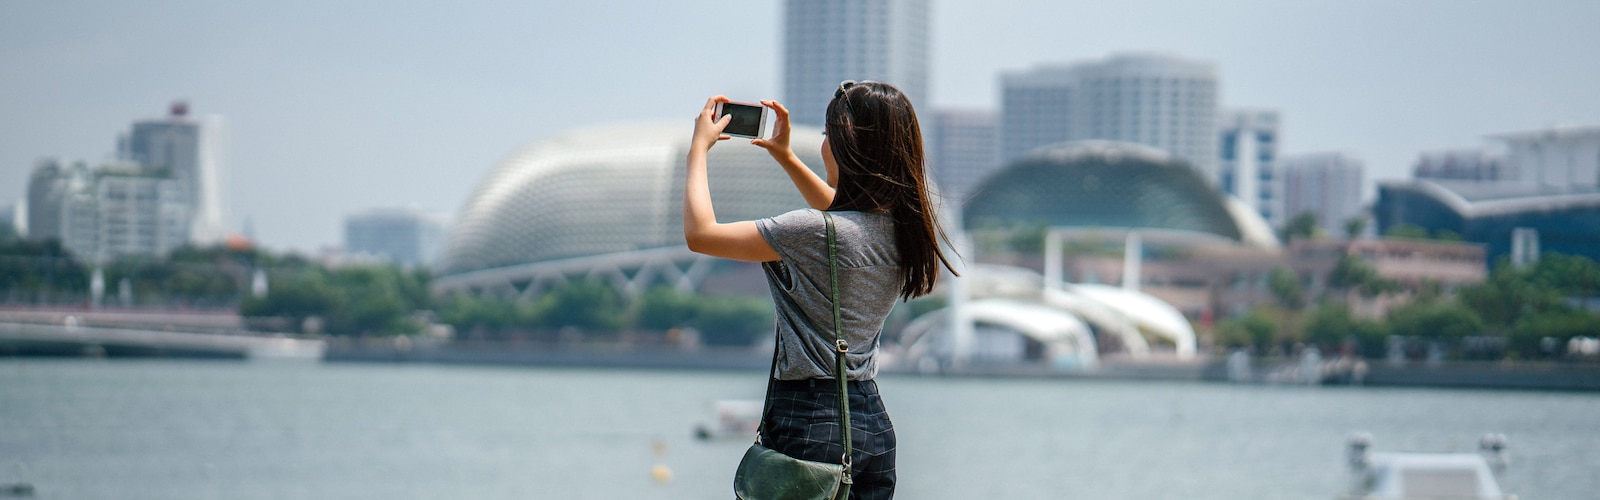 Uma mulher a tirar uma fotografia da paisagem citadina com um iPhone